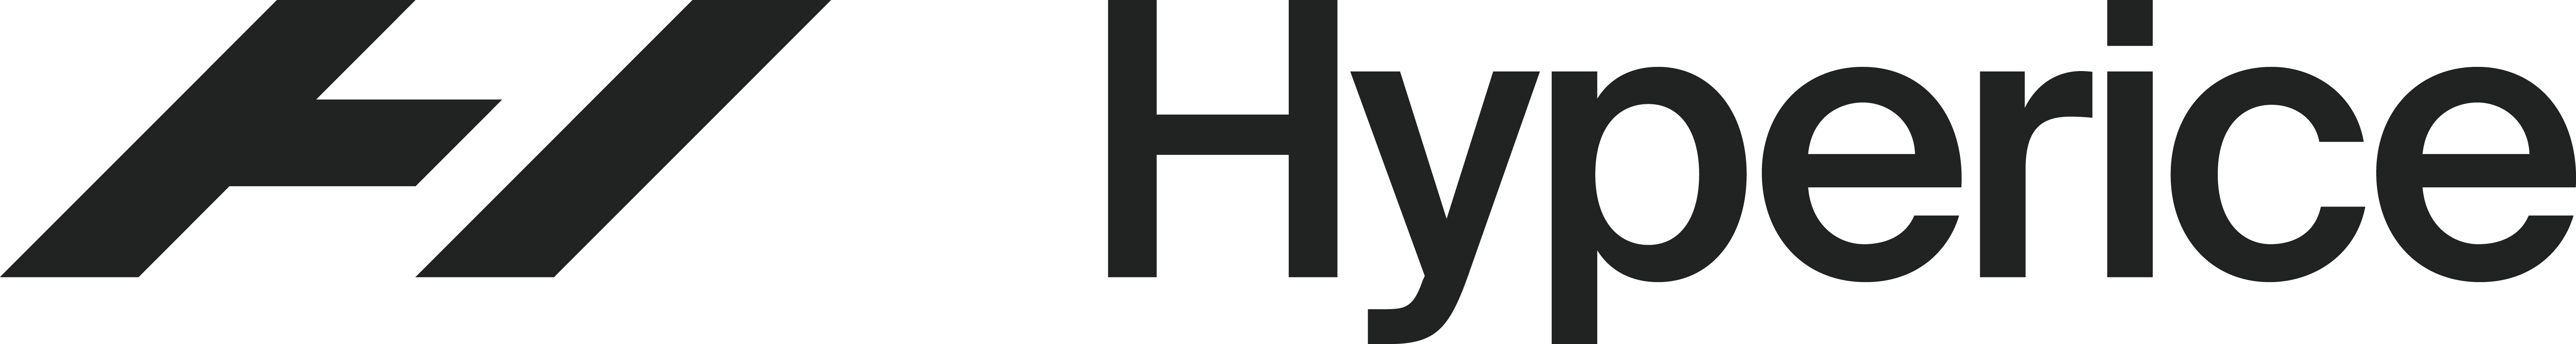 HYPERICE SORGT FÜR GOOD VIBRATIONS - Sponsor logo